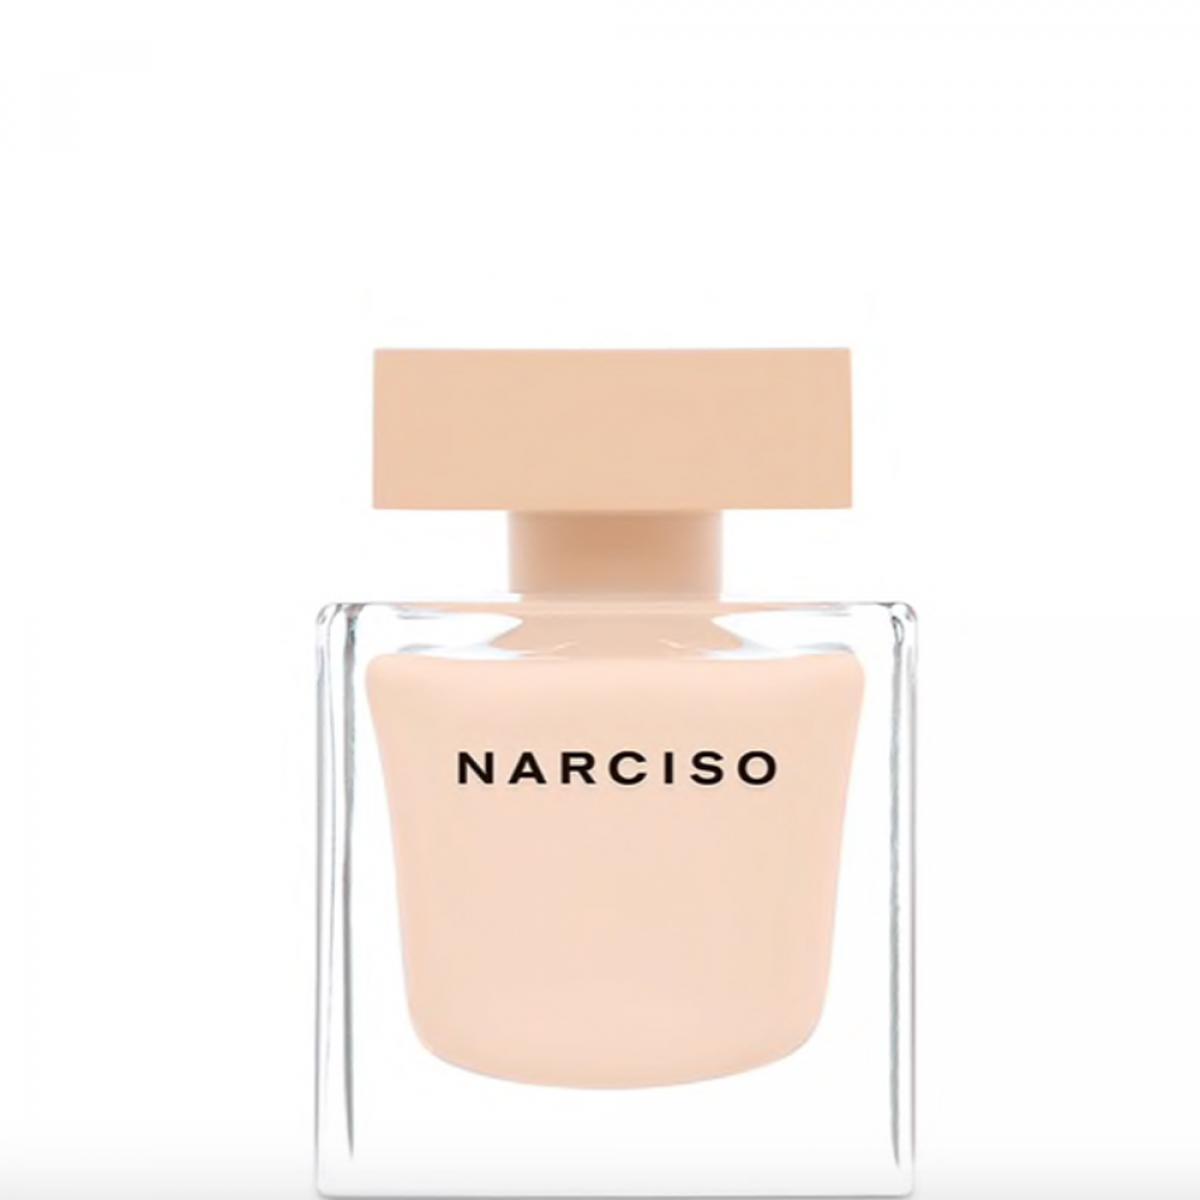 Narciso eau de parfum poudrée de Narciso Rodriguez